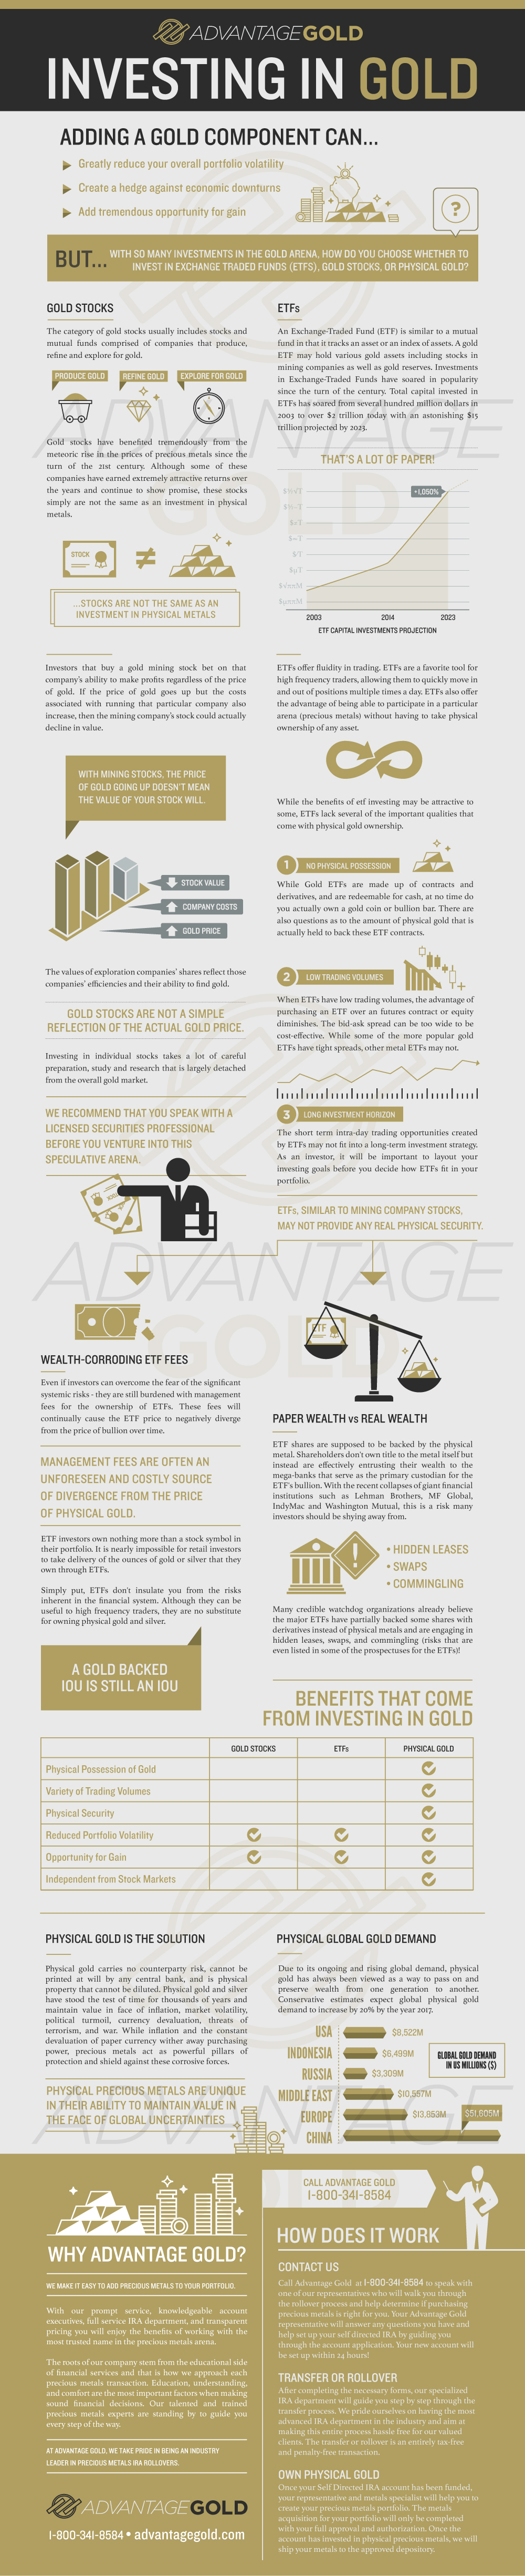 gold_ira_infographic